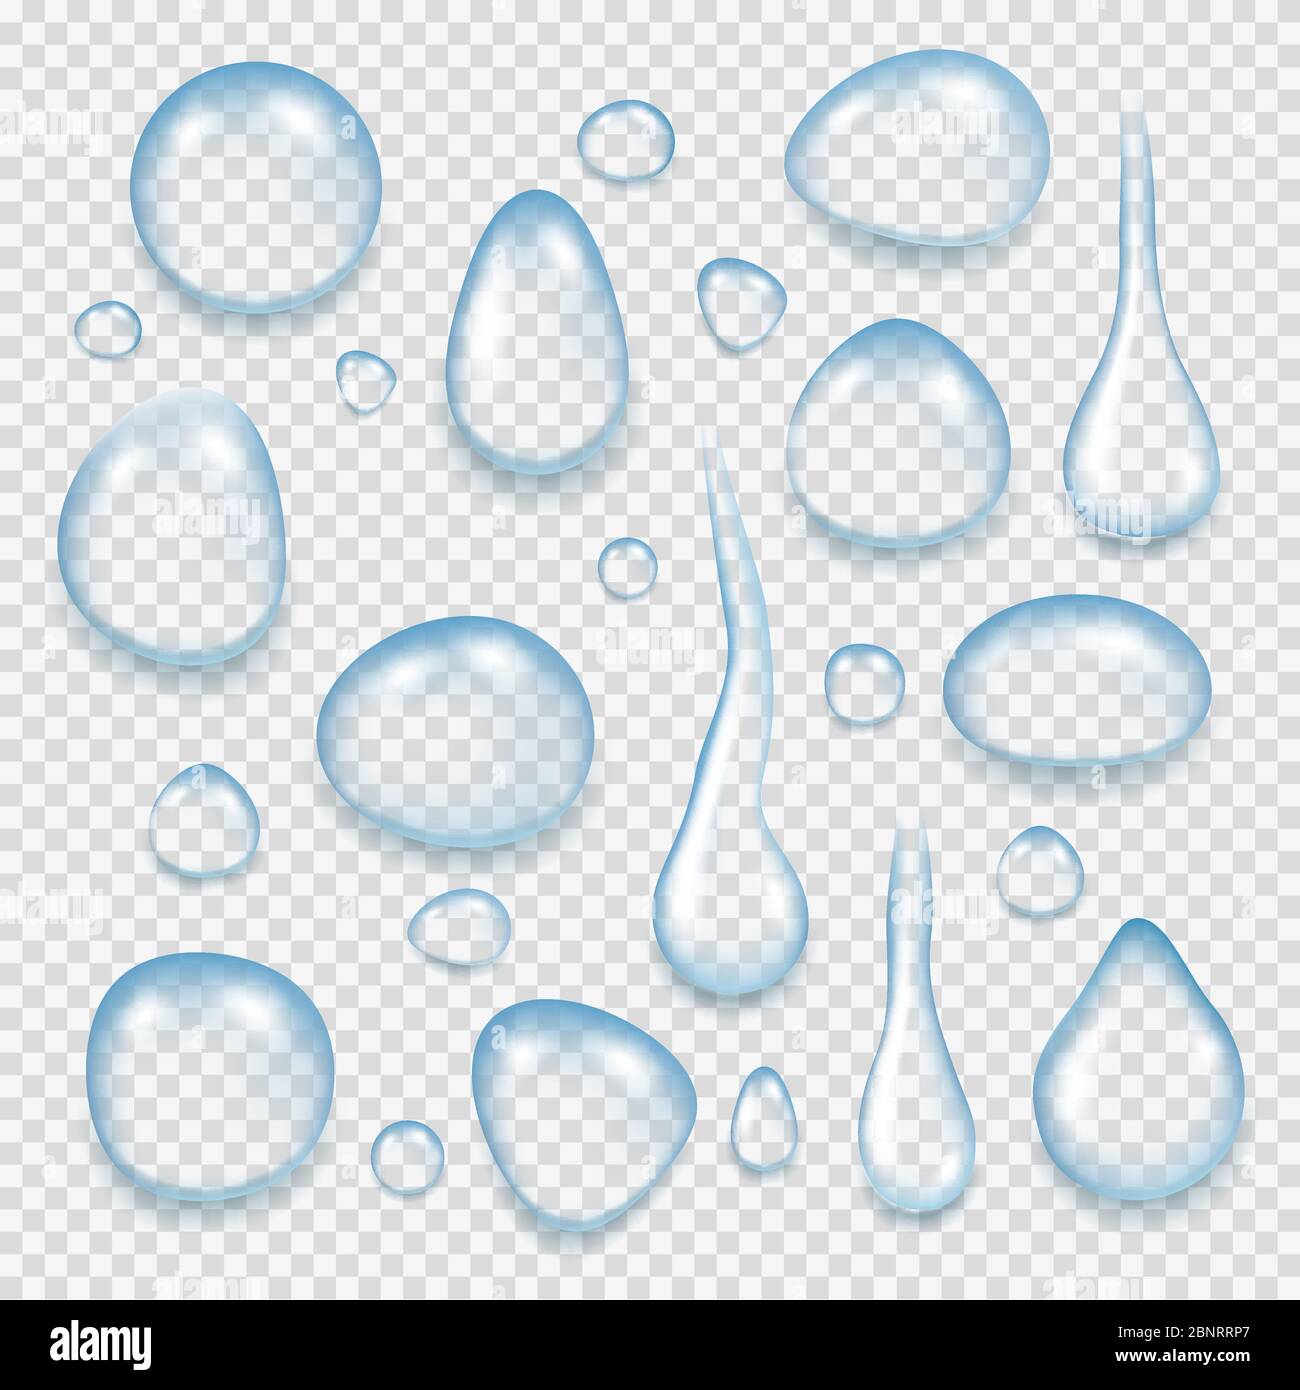 Reinigen Sie Wassertropfen. Reflektierende Flüssigkeit frische Spritzer von transparenten Wasser Vektor realistische Bilder Stock Vektor